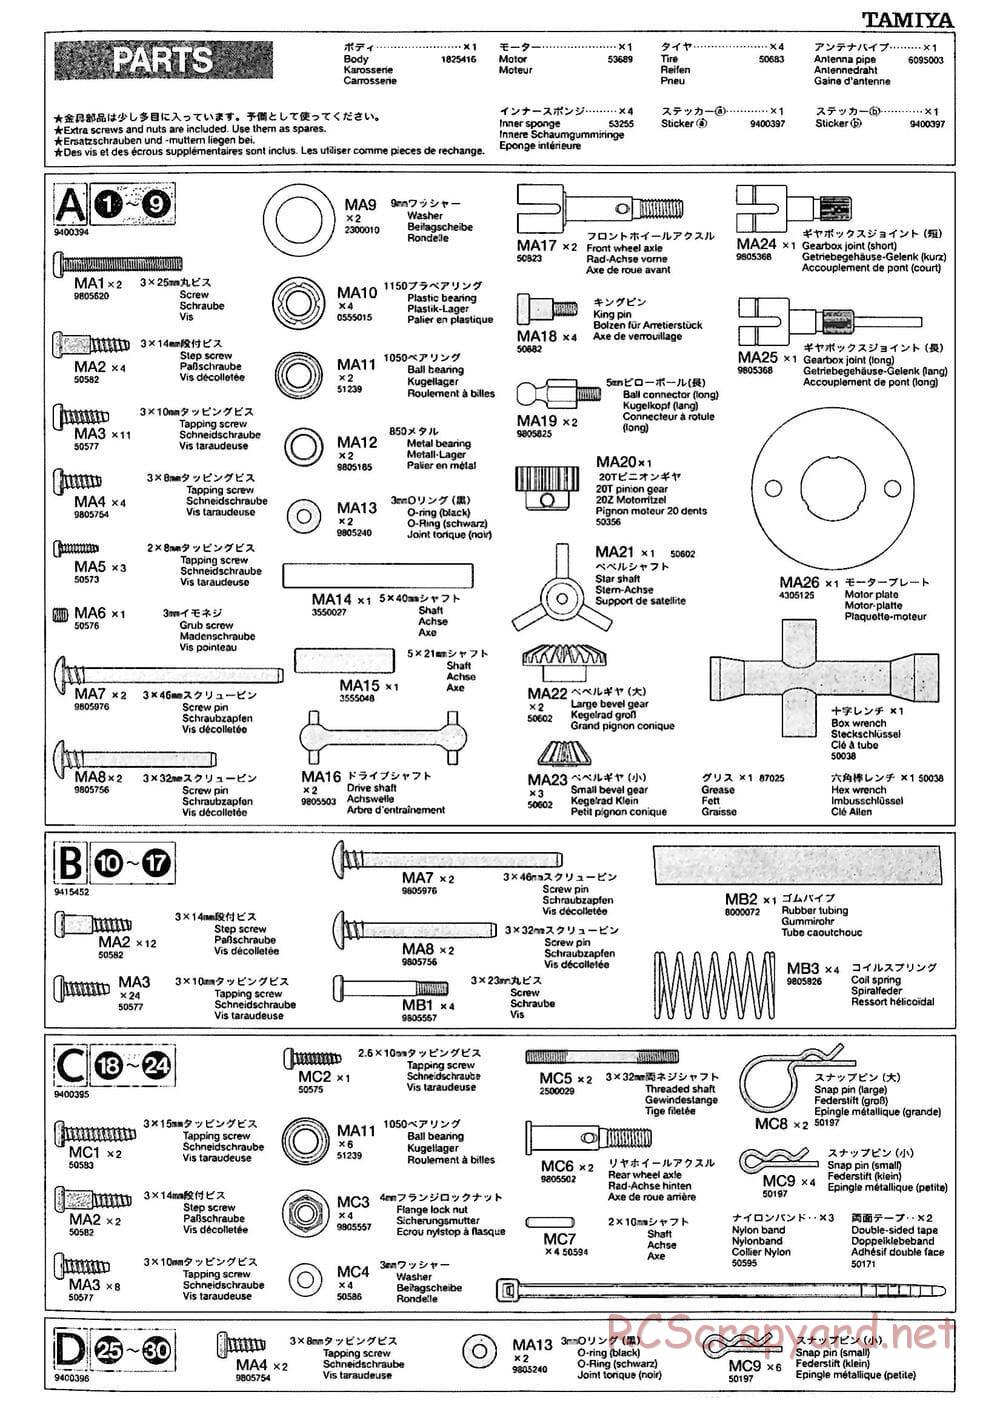 Tamiya - M-03M Chassis - Manual - Page 15